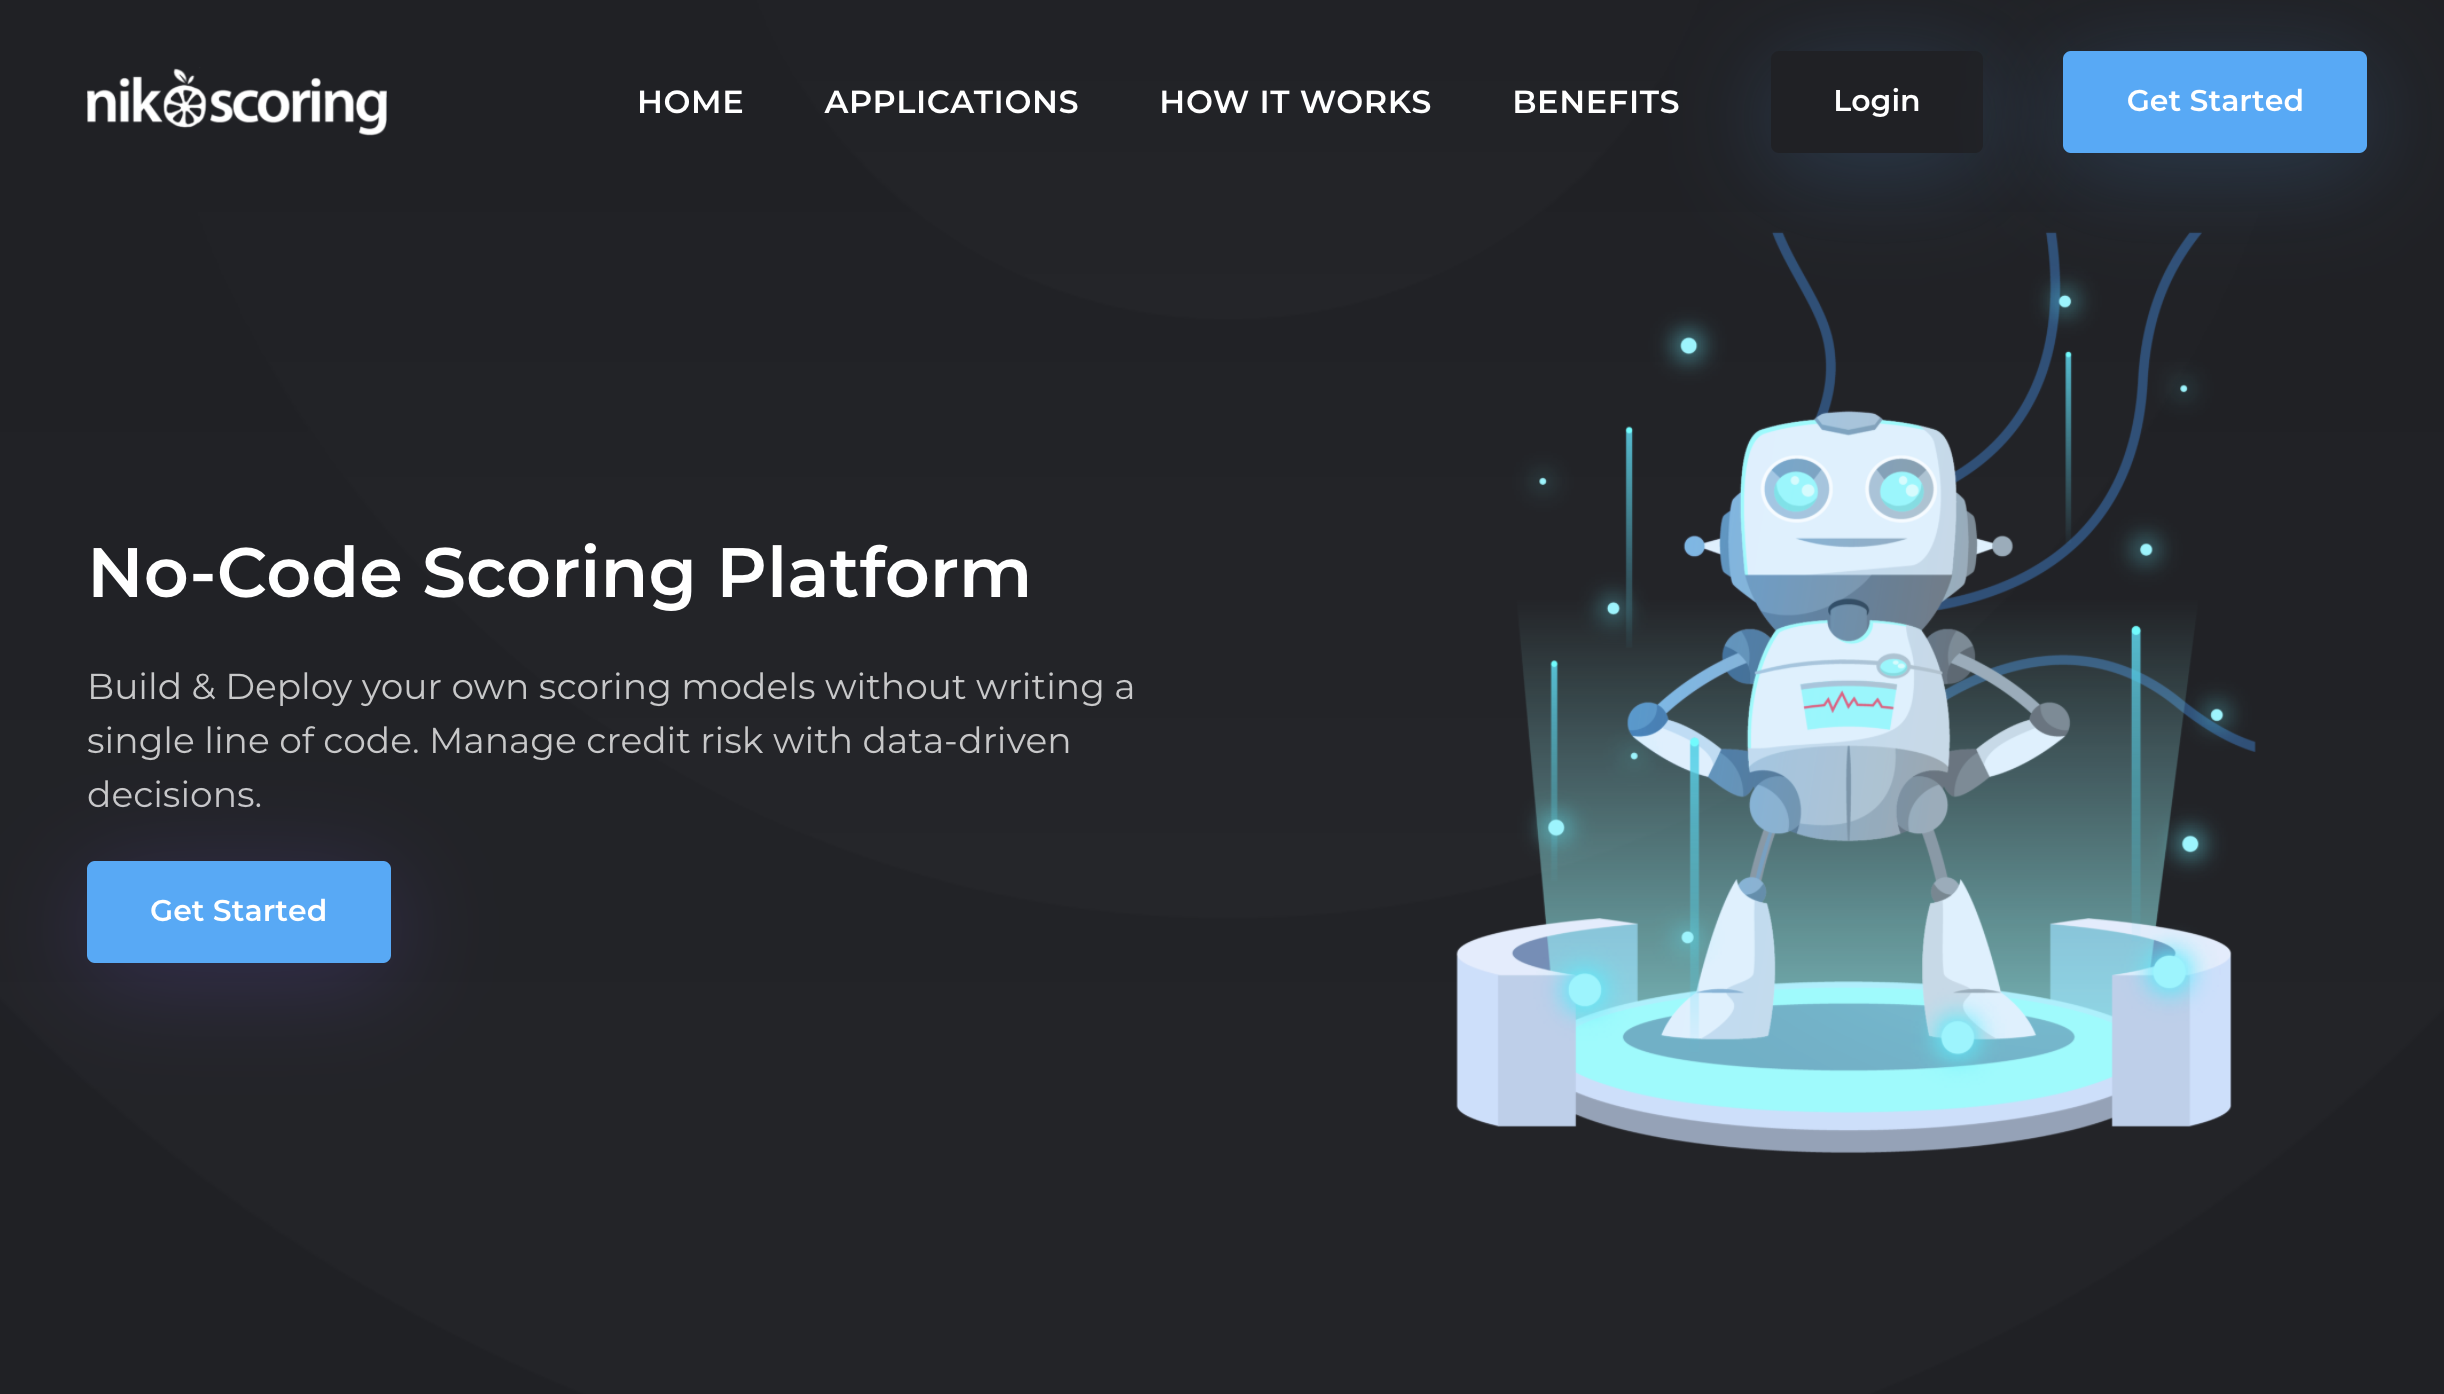 Introducing our new No-Code Scoring Platform – NIKO Scoring